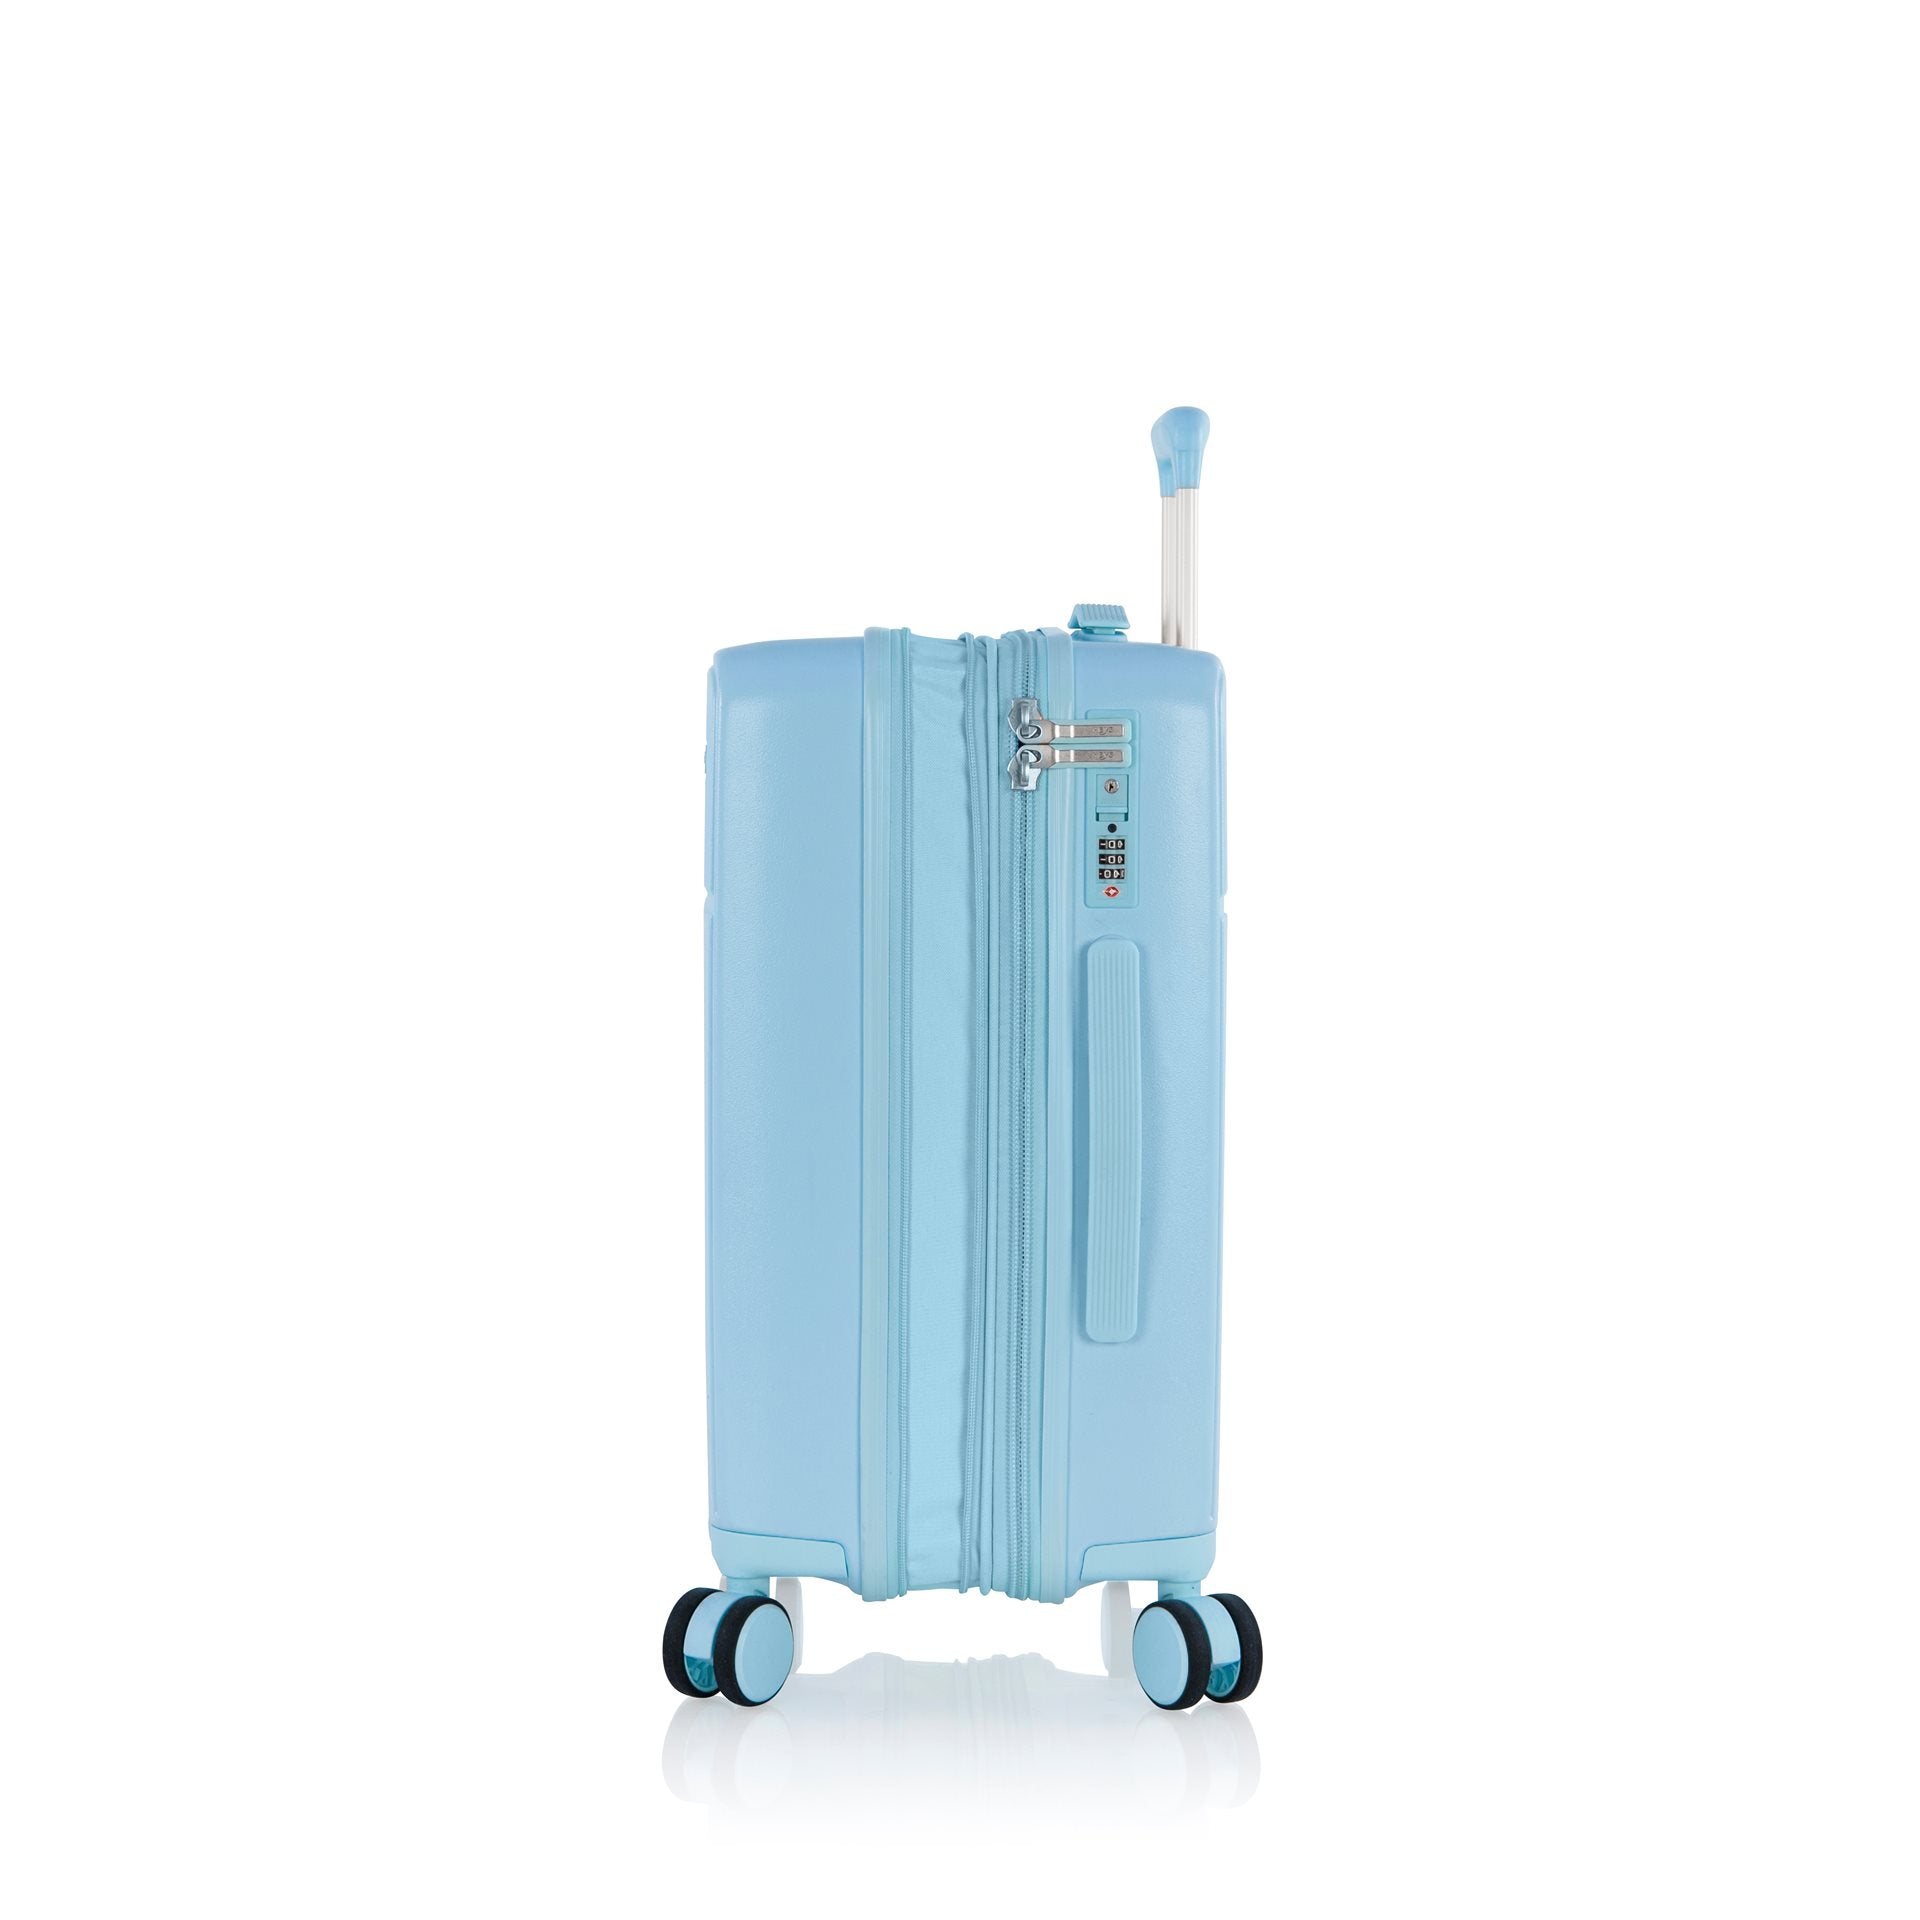 Heys Pastel Koffer 21" (53 cm)  - Light blue Handbagage Koffer - Reisartikelen-nl